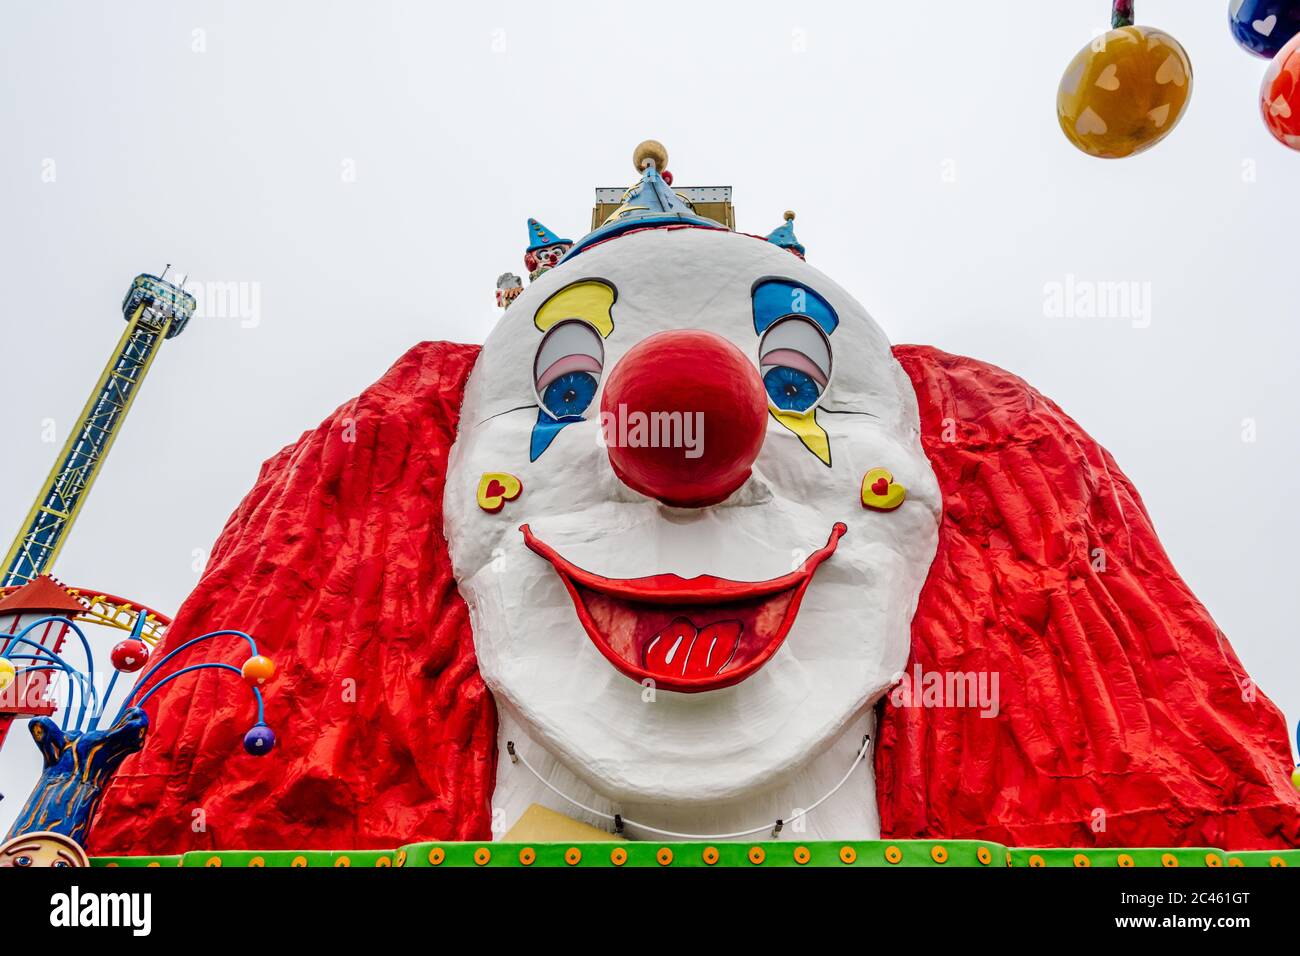 Un clown géant au parc d'attractions Wiener Prater, Vienne, Autriche. Banque D'Images